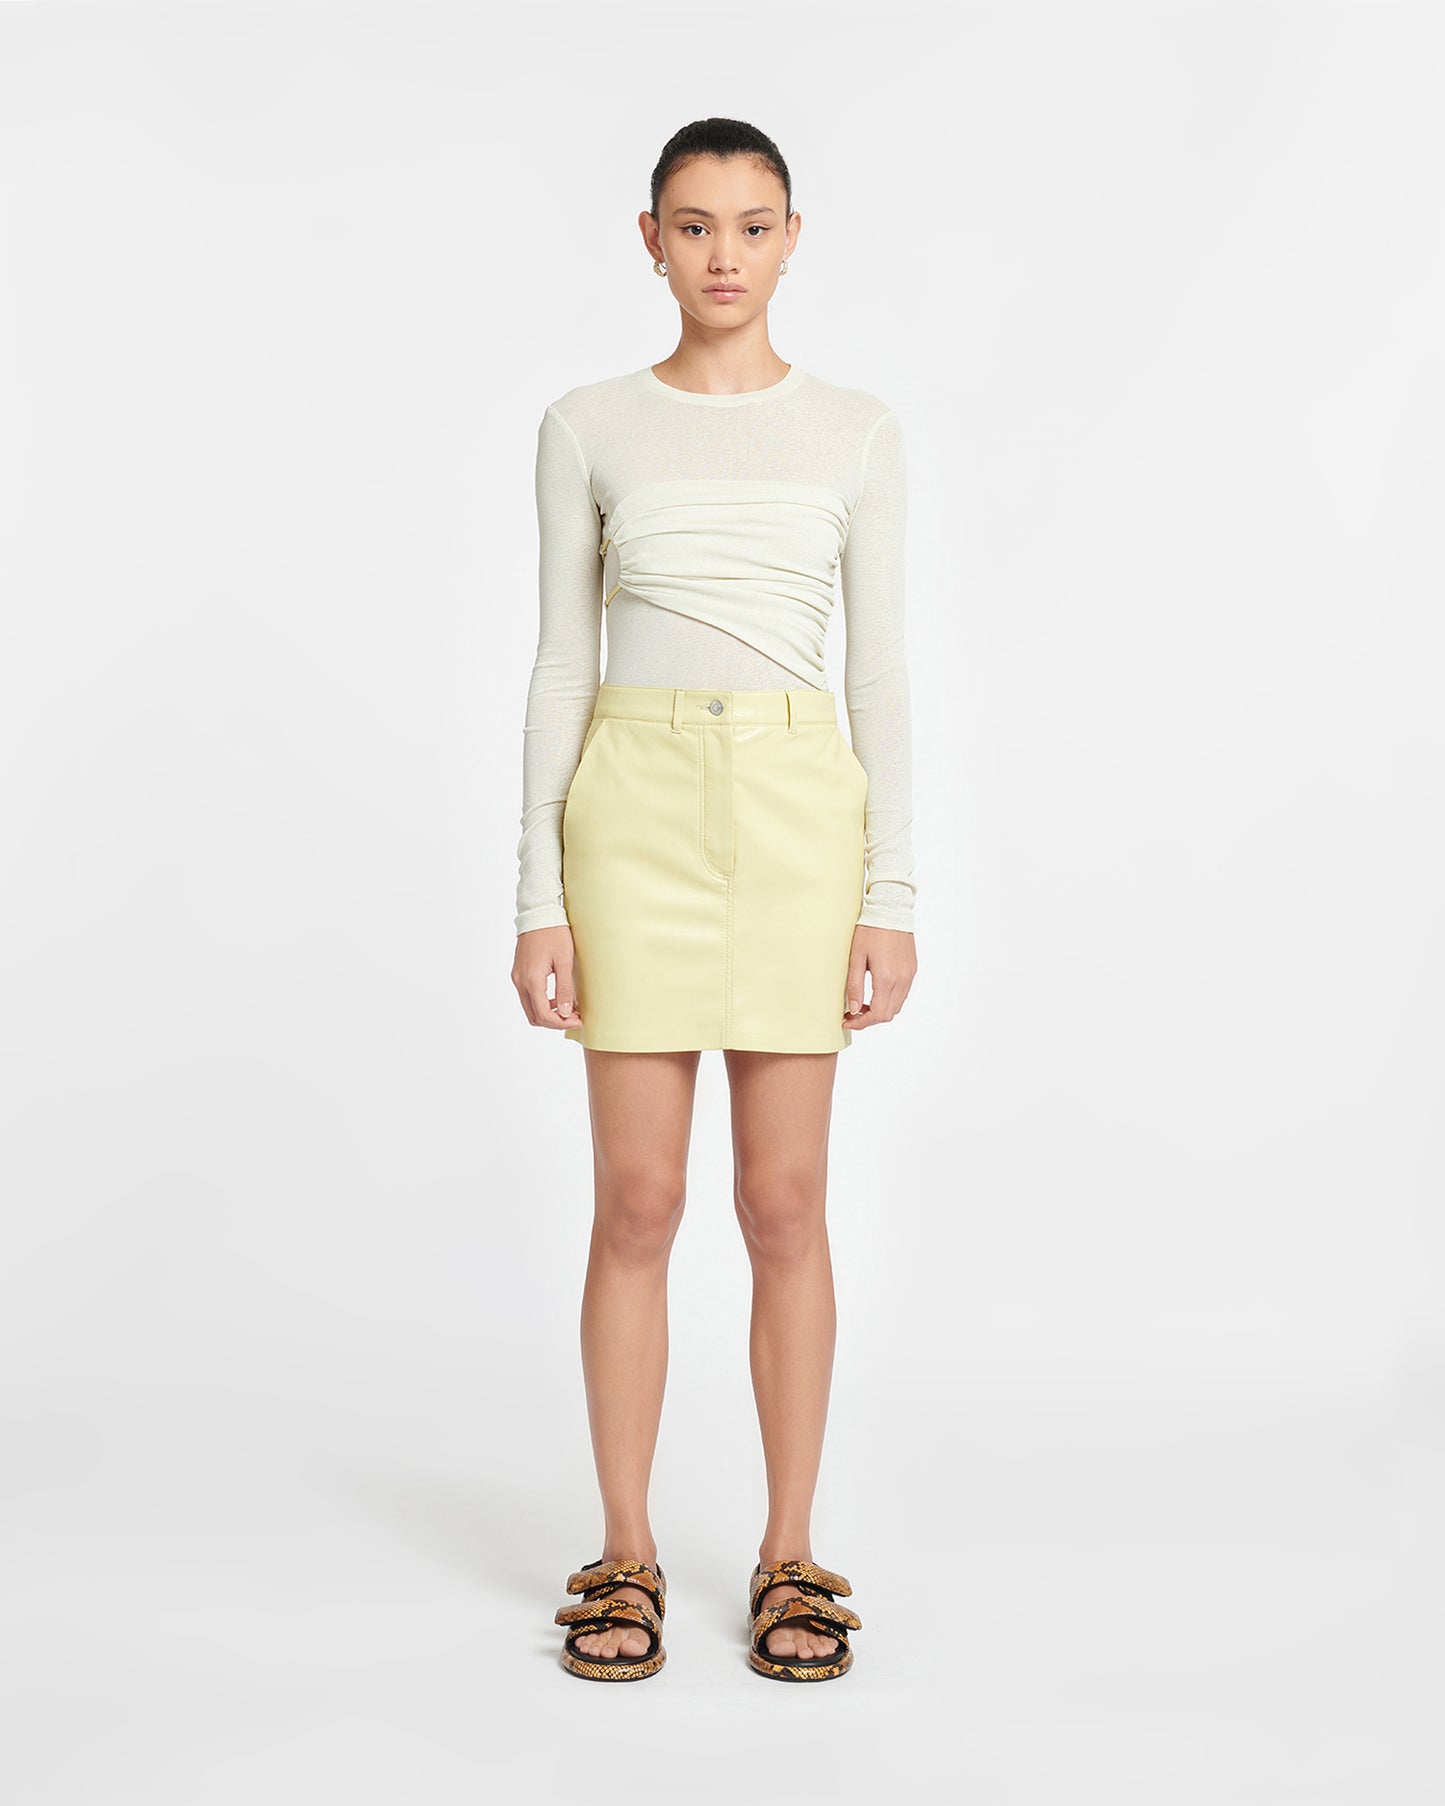 Miray - Okobor™ Alt-Leather Mini Skirt - Lemongrass